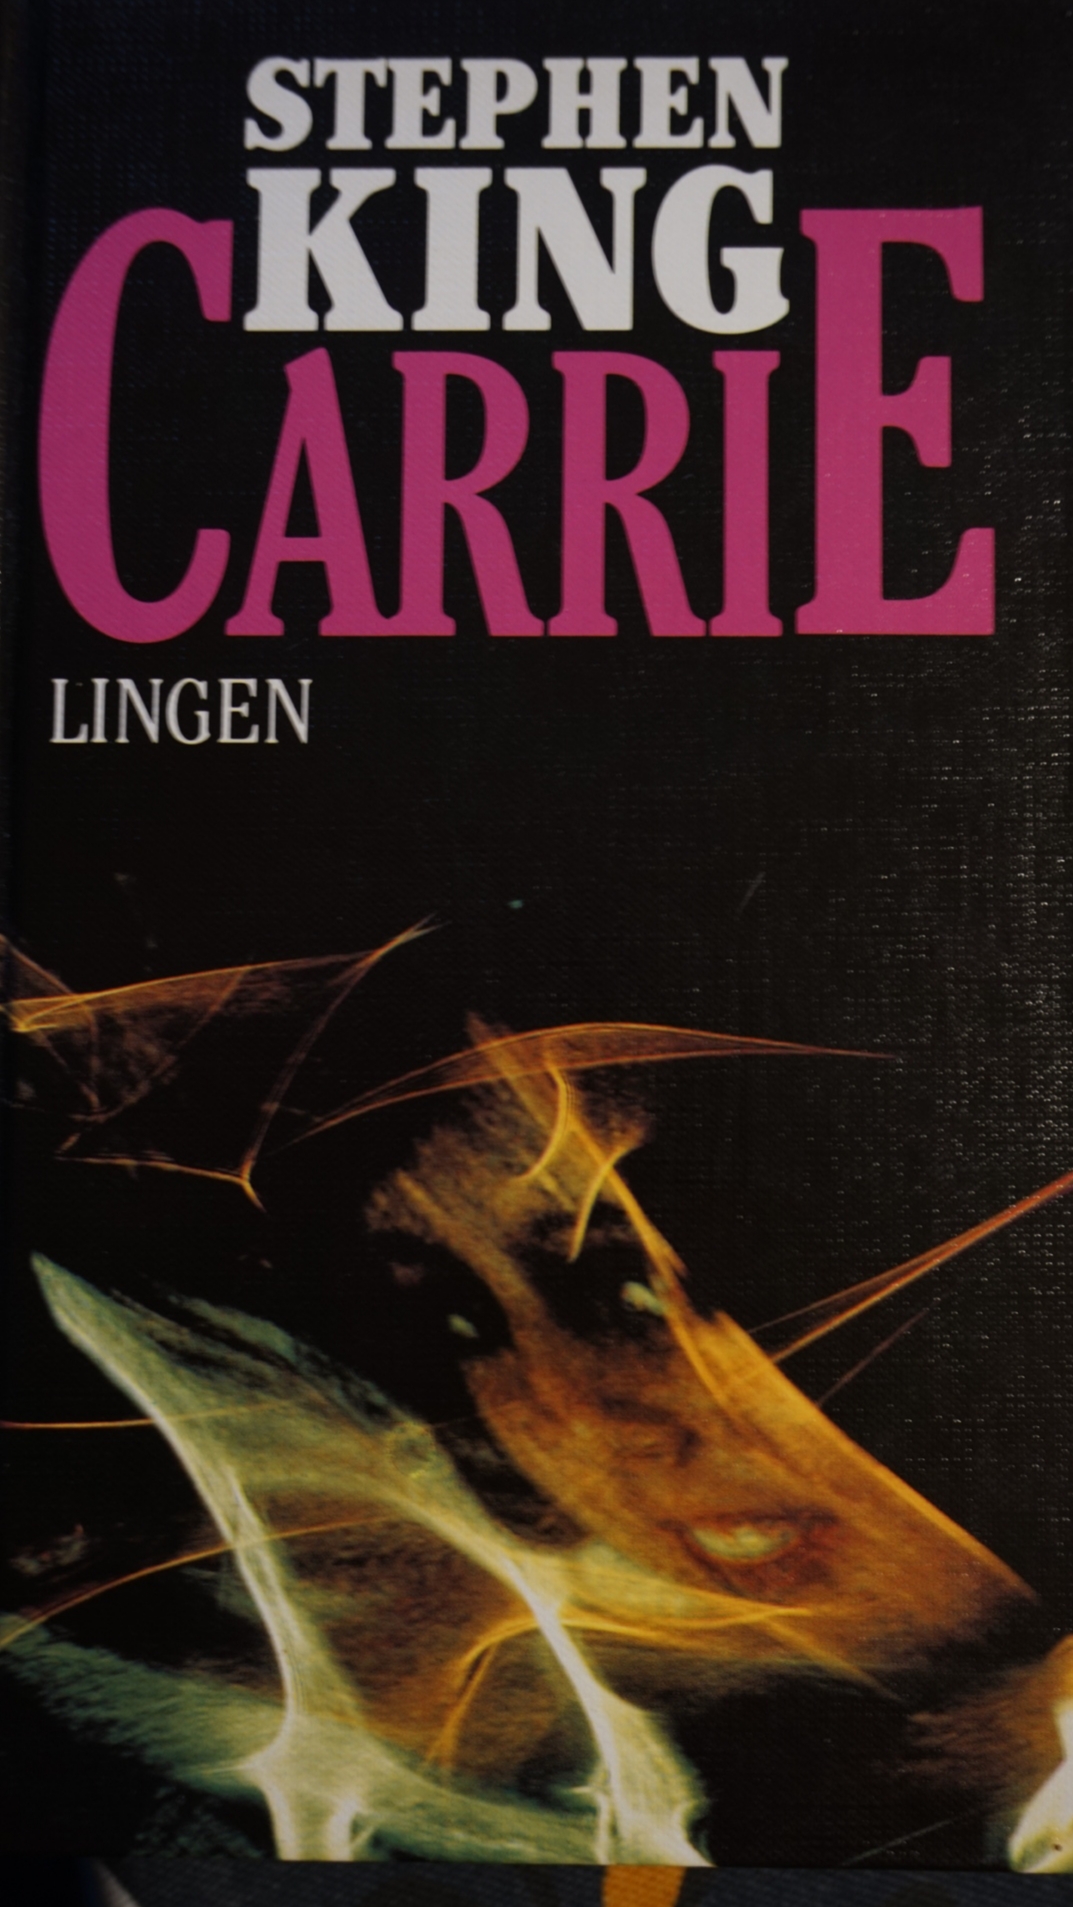 Stephen King: Carrie (Hardcover, deutsch language, 1987, Lingen)